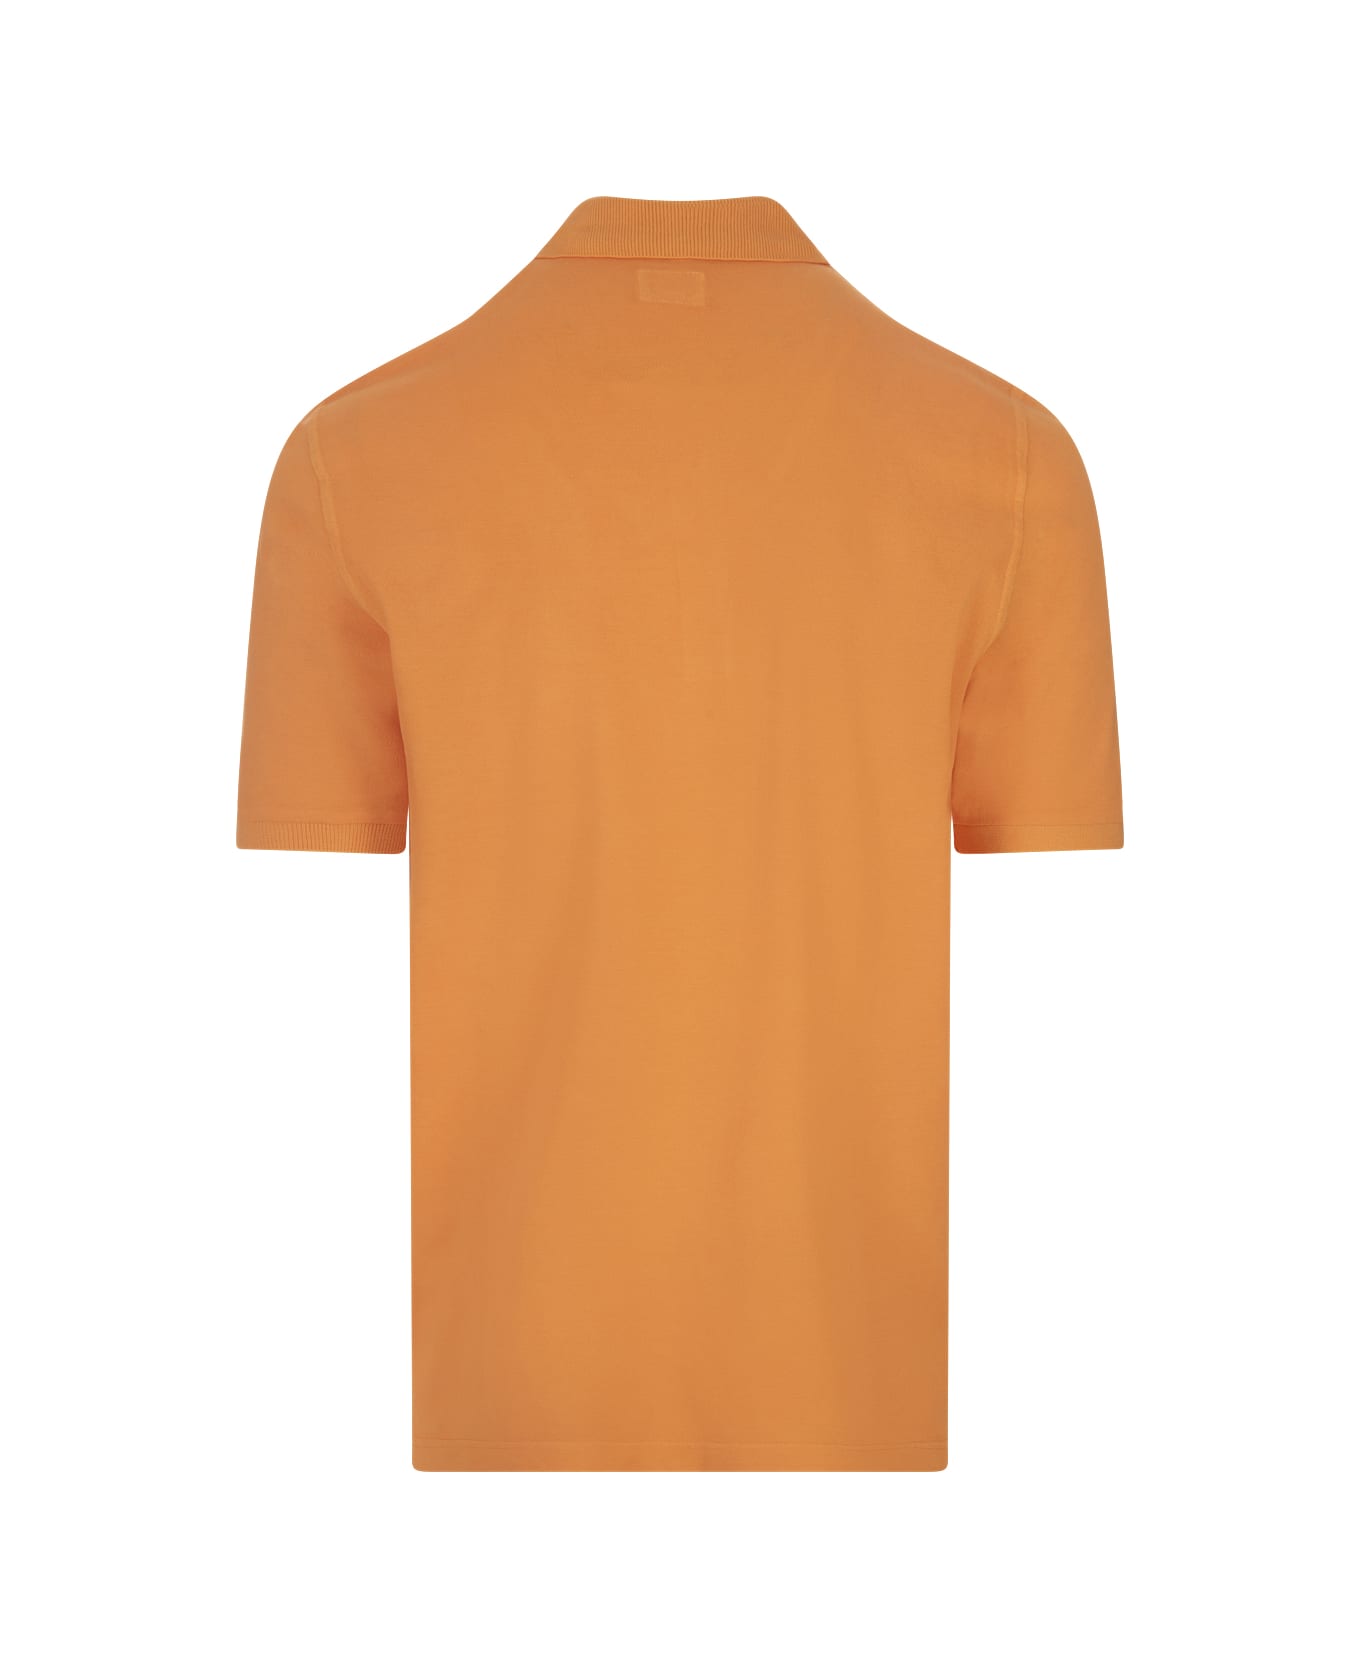 Fedeli Orange Light Cotton Piquet Polo Shirt - Orange